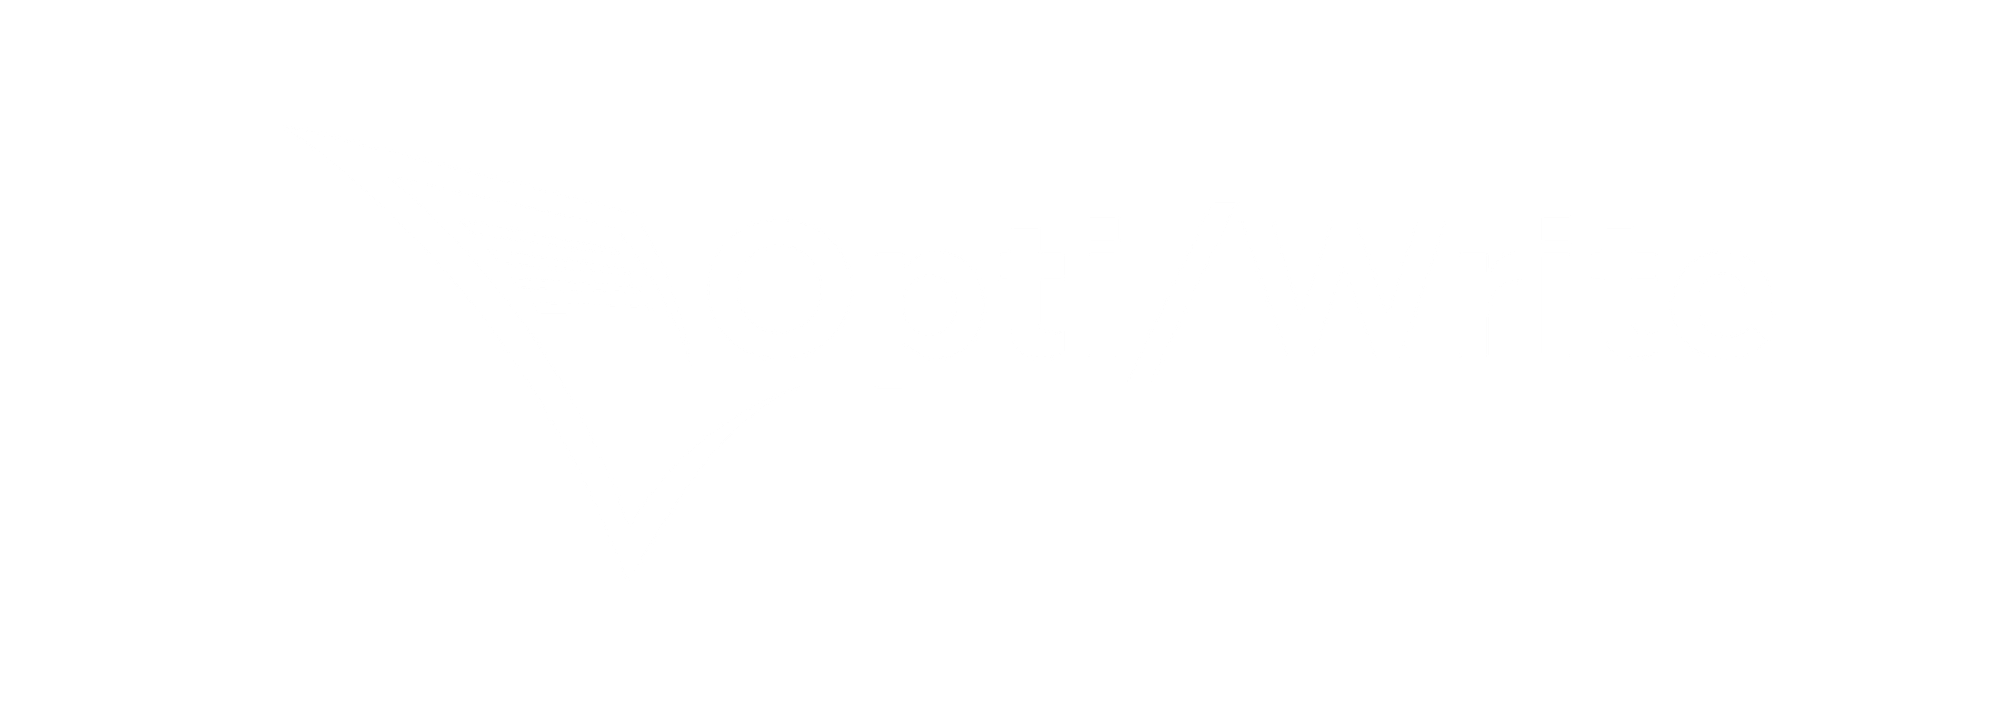 Opti-Write Logo All White